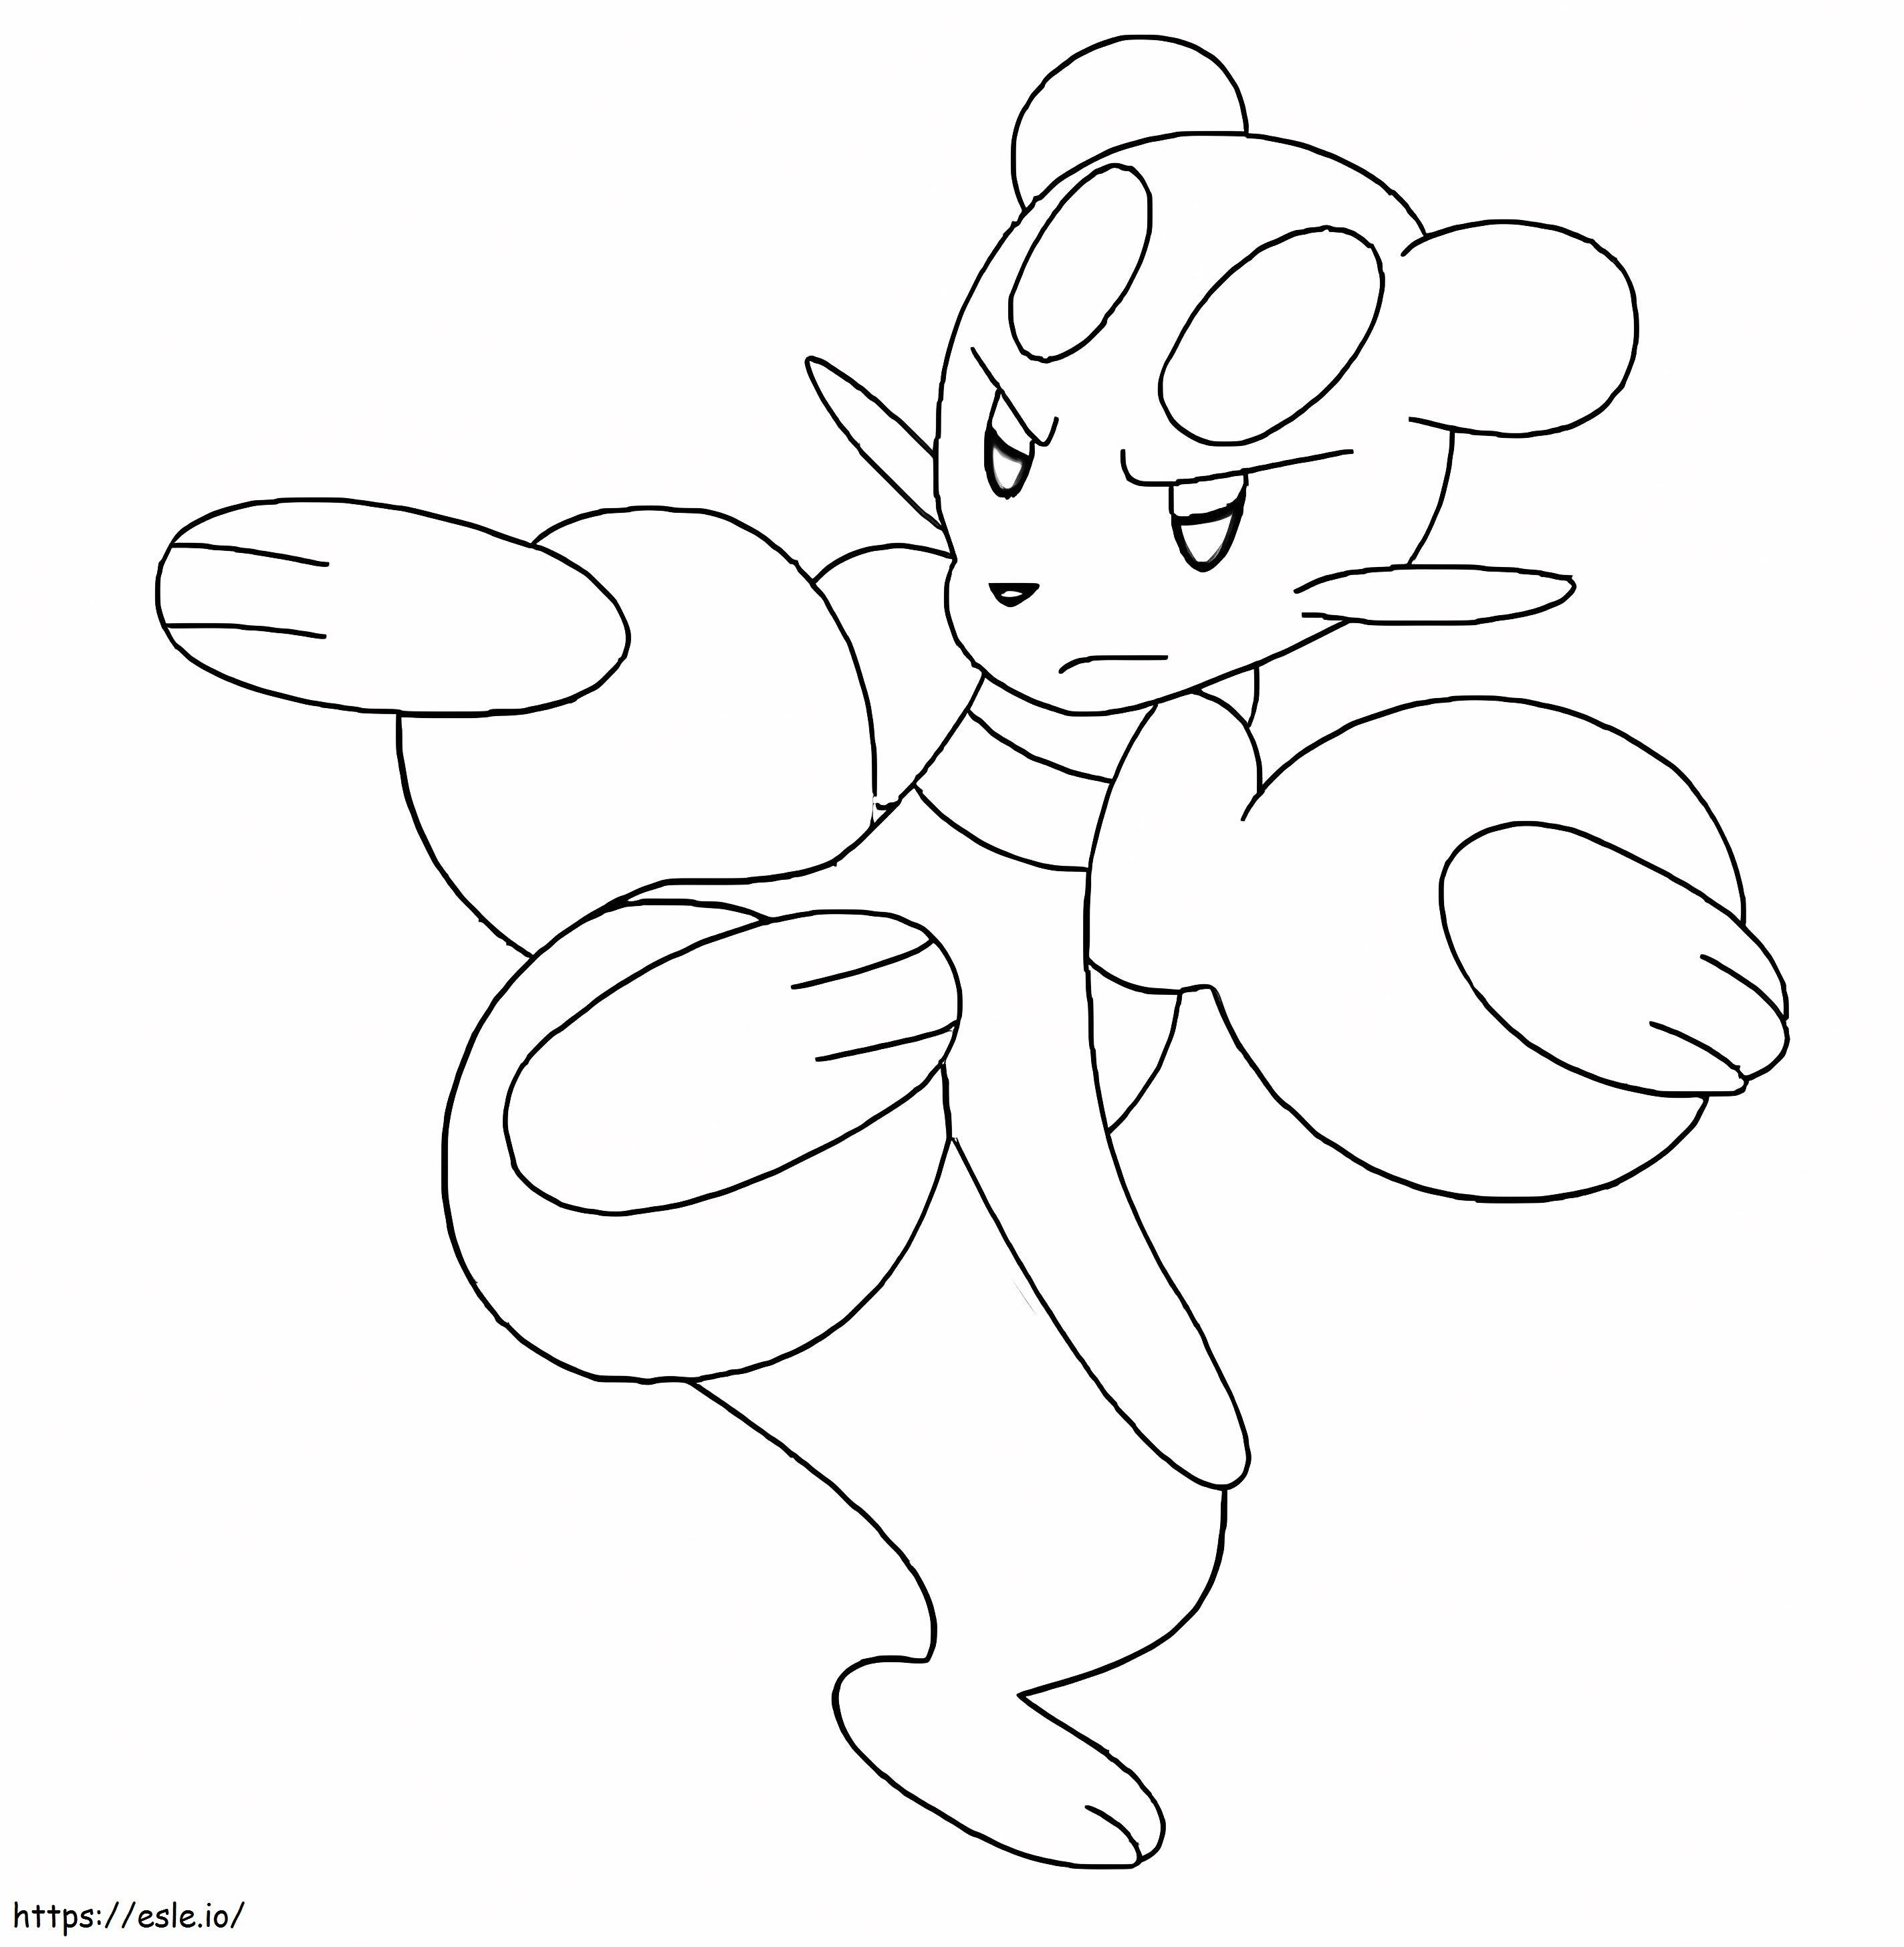 Coloriage Mienfoo Pokémon 4 à imprimer dessin